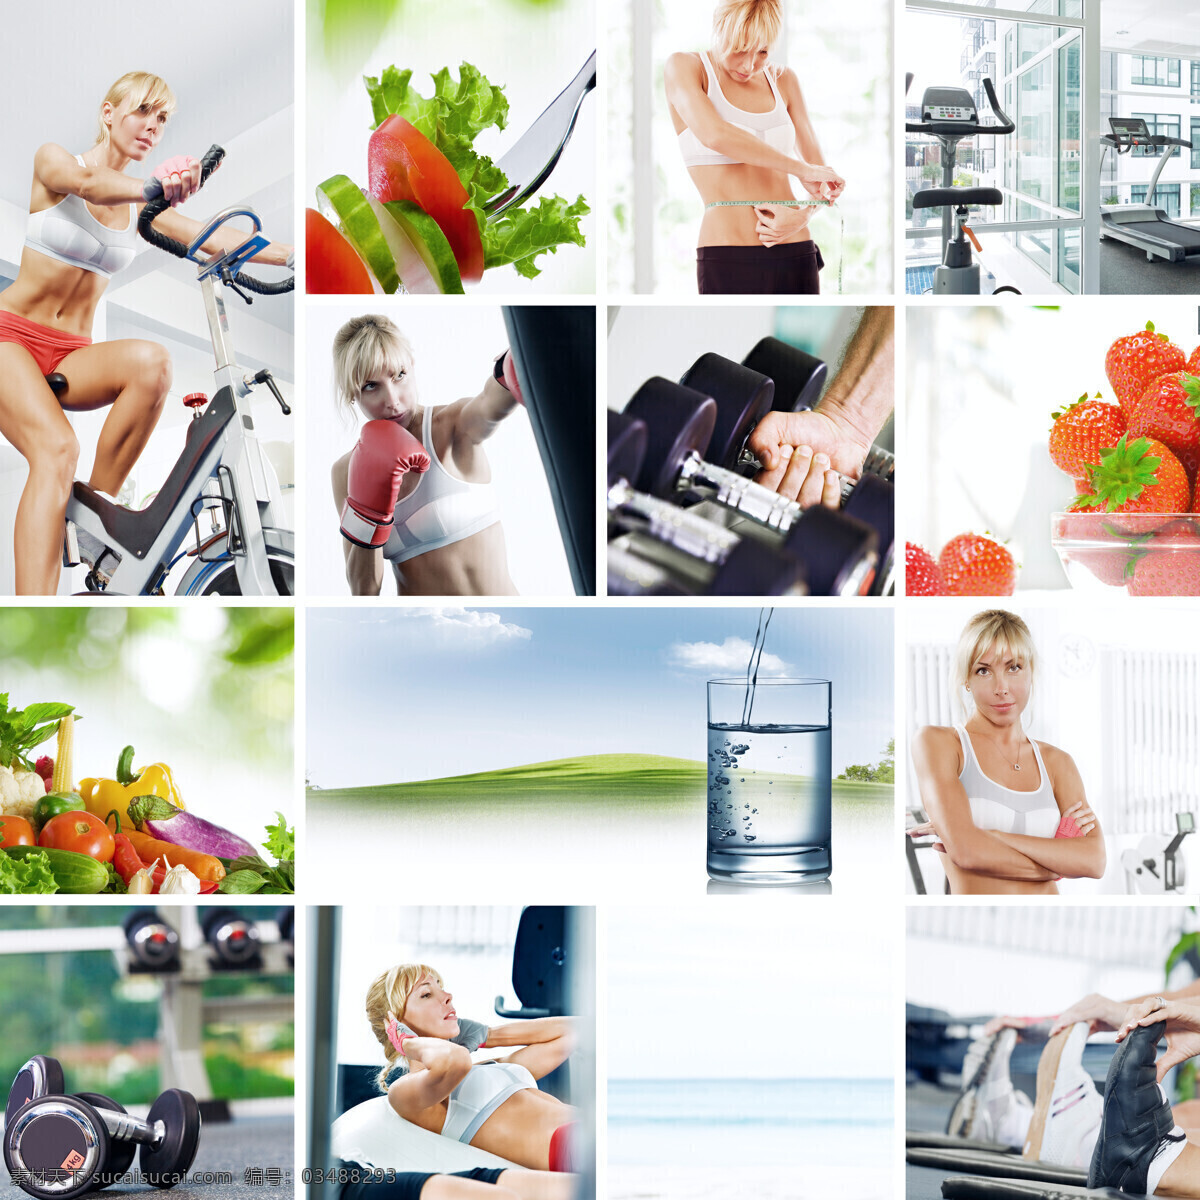 健身 美女 水杯 水果 哑铃 跑步机 健身房 健身器材 外国 人物 运动 体育运动 美容健身 生活百科